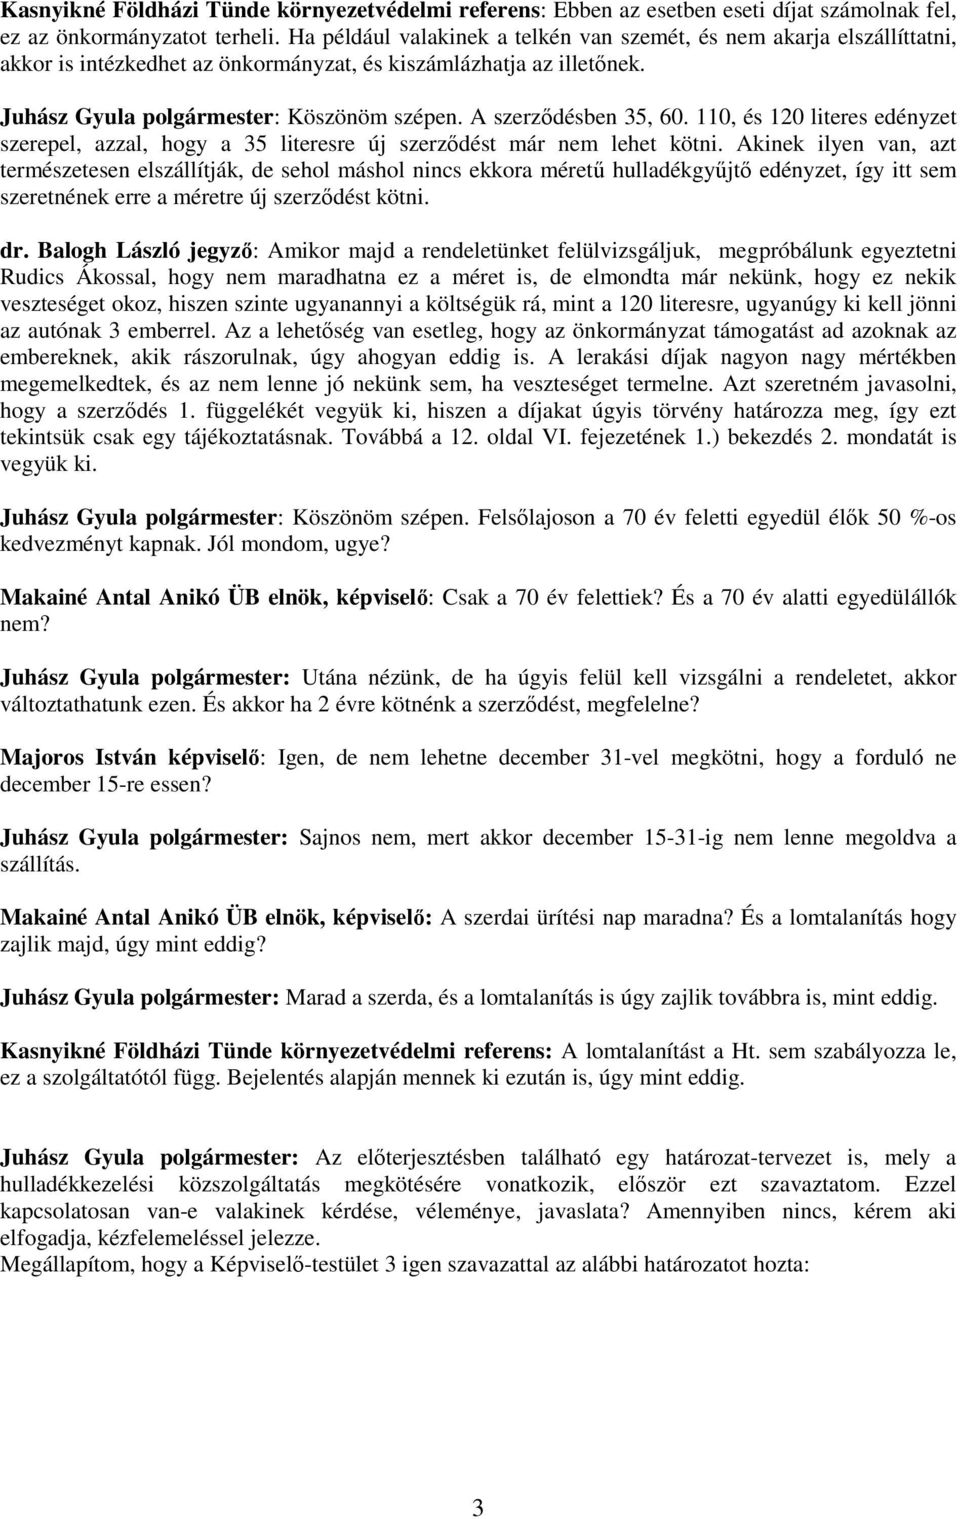 A szerzıdésben 35, 60. 110, és 120 literes edényzet szerepel, azzal, hogy a 35 literesre új szerzıdést már nem lehet kötni.